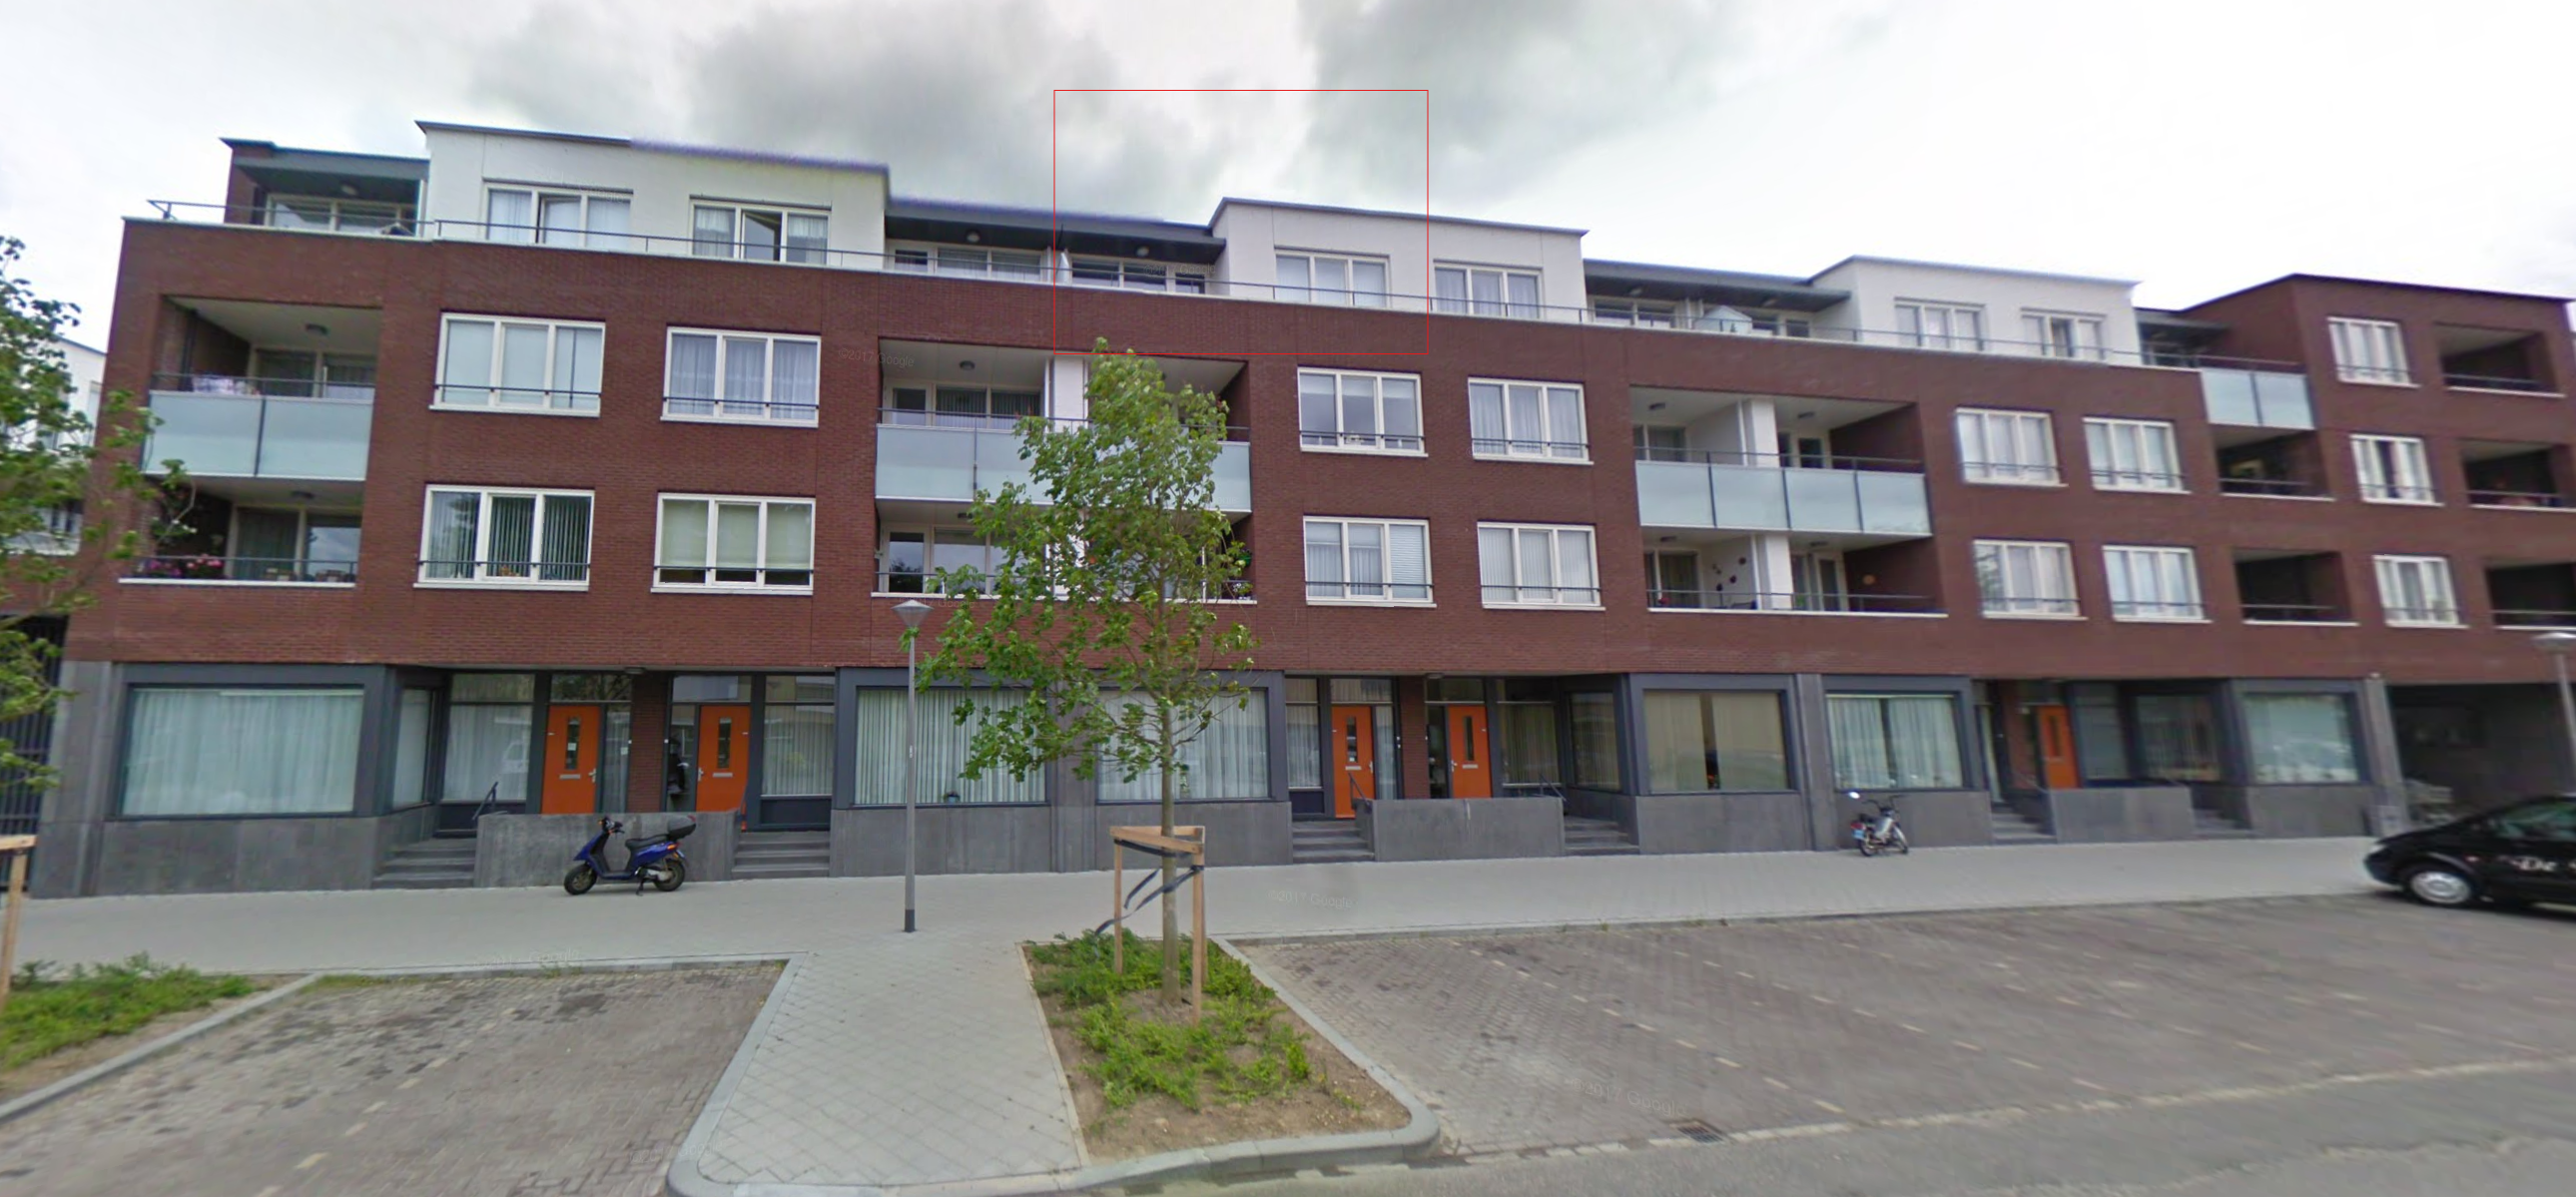 Edisonstraat 9, 6224 GK Maastricht, Nederland